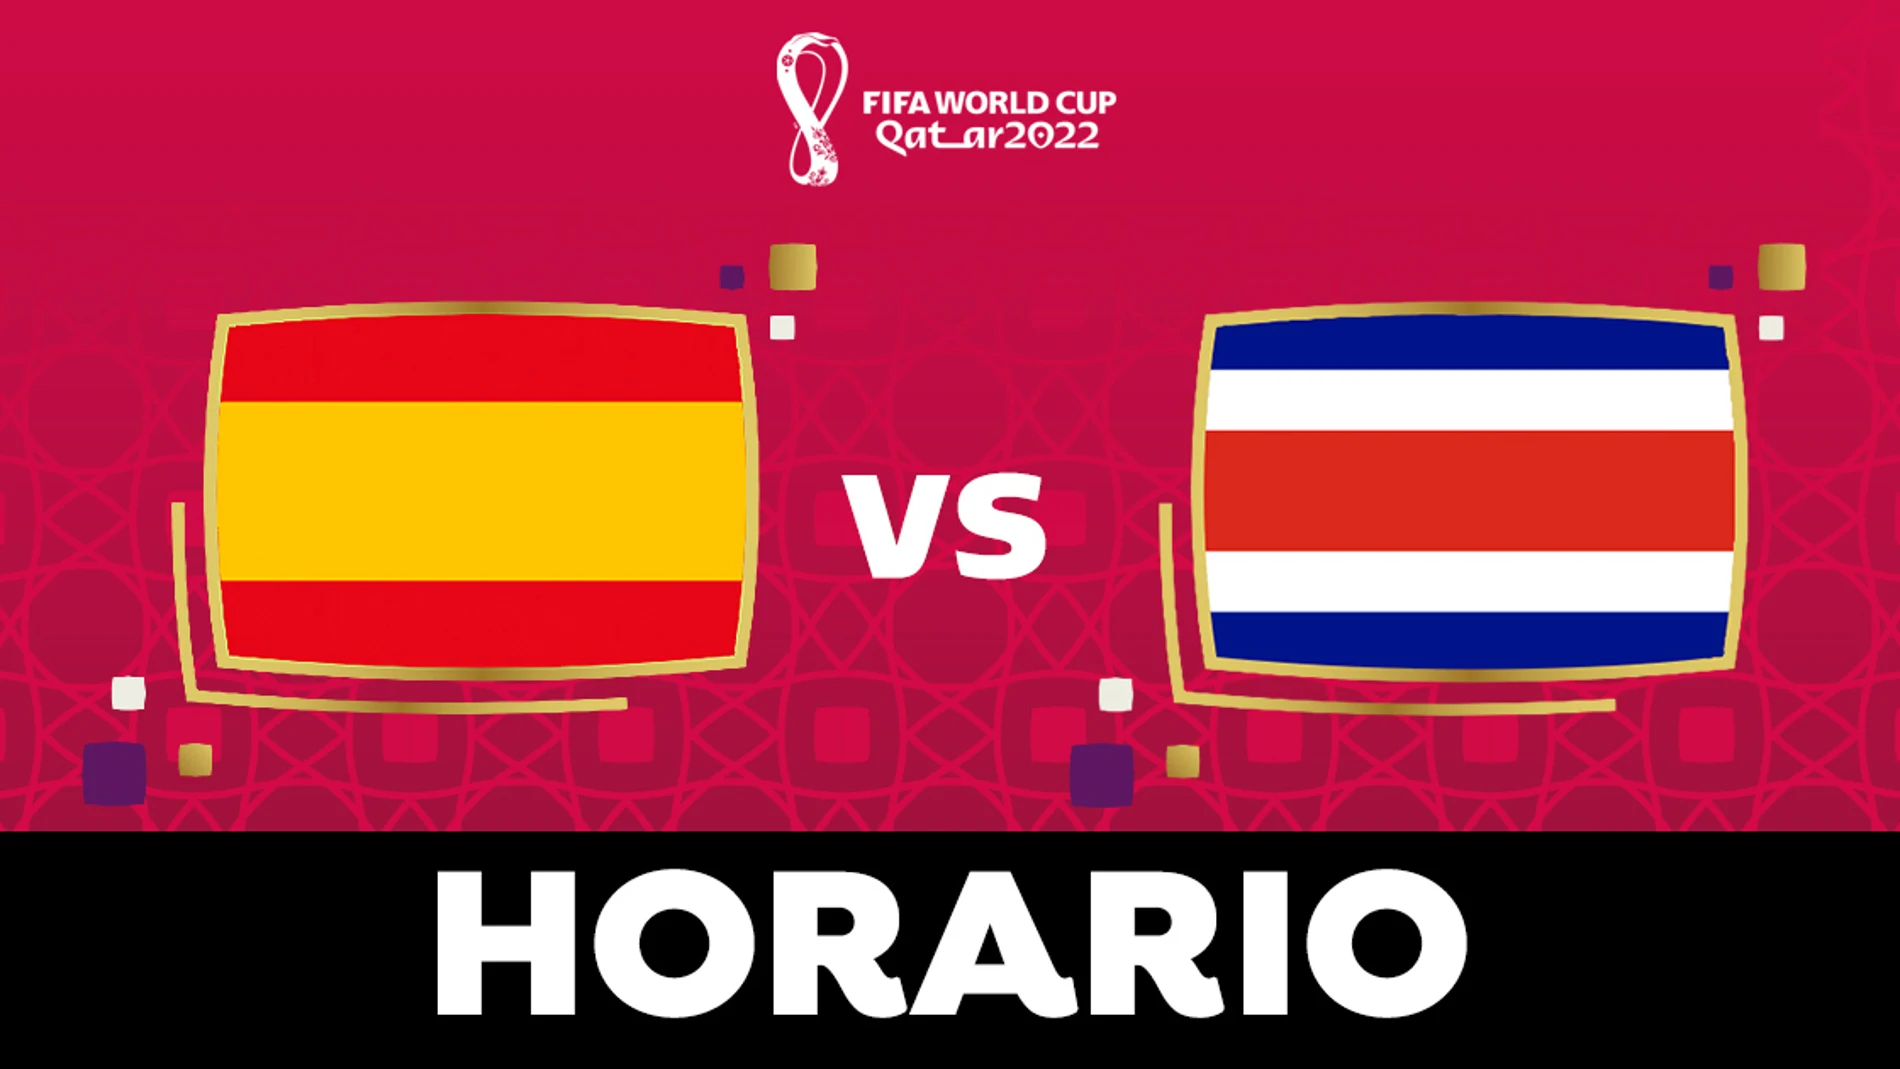 - Costa Rica: Horario y dónde el partido del Mundial de Qatar en directo